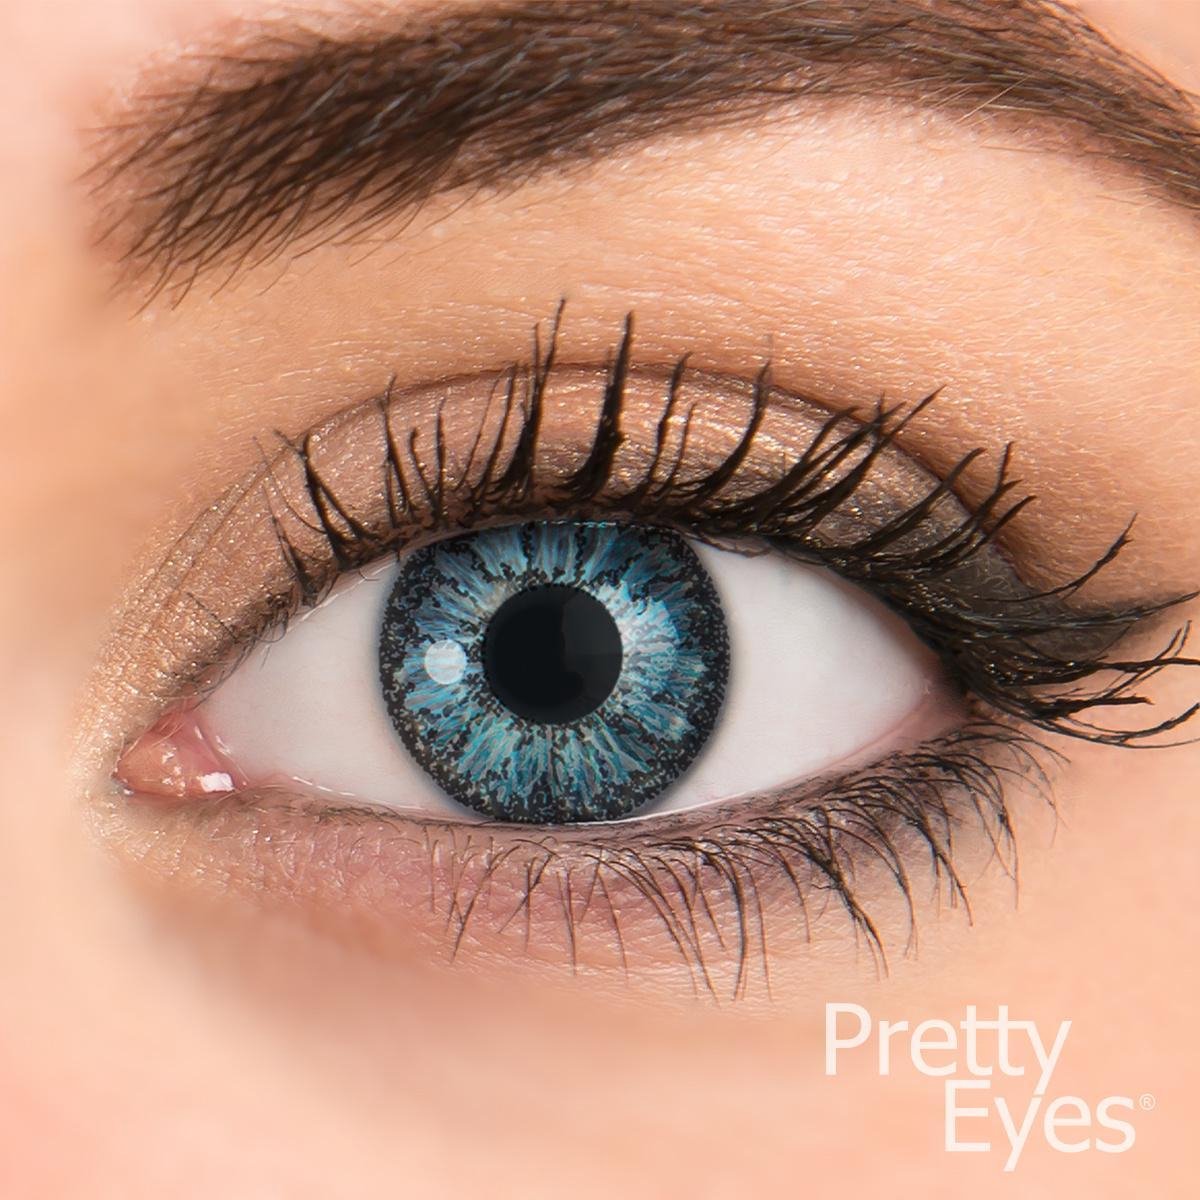 Pretty Eyes kleurlenzen blauw -1,50 - 4 stuks - daglenzen op sterkte